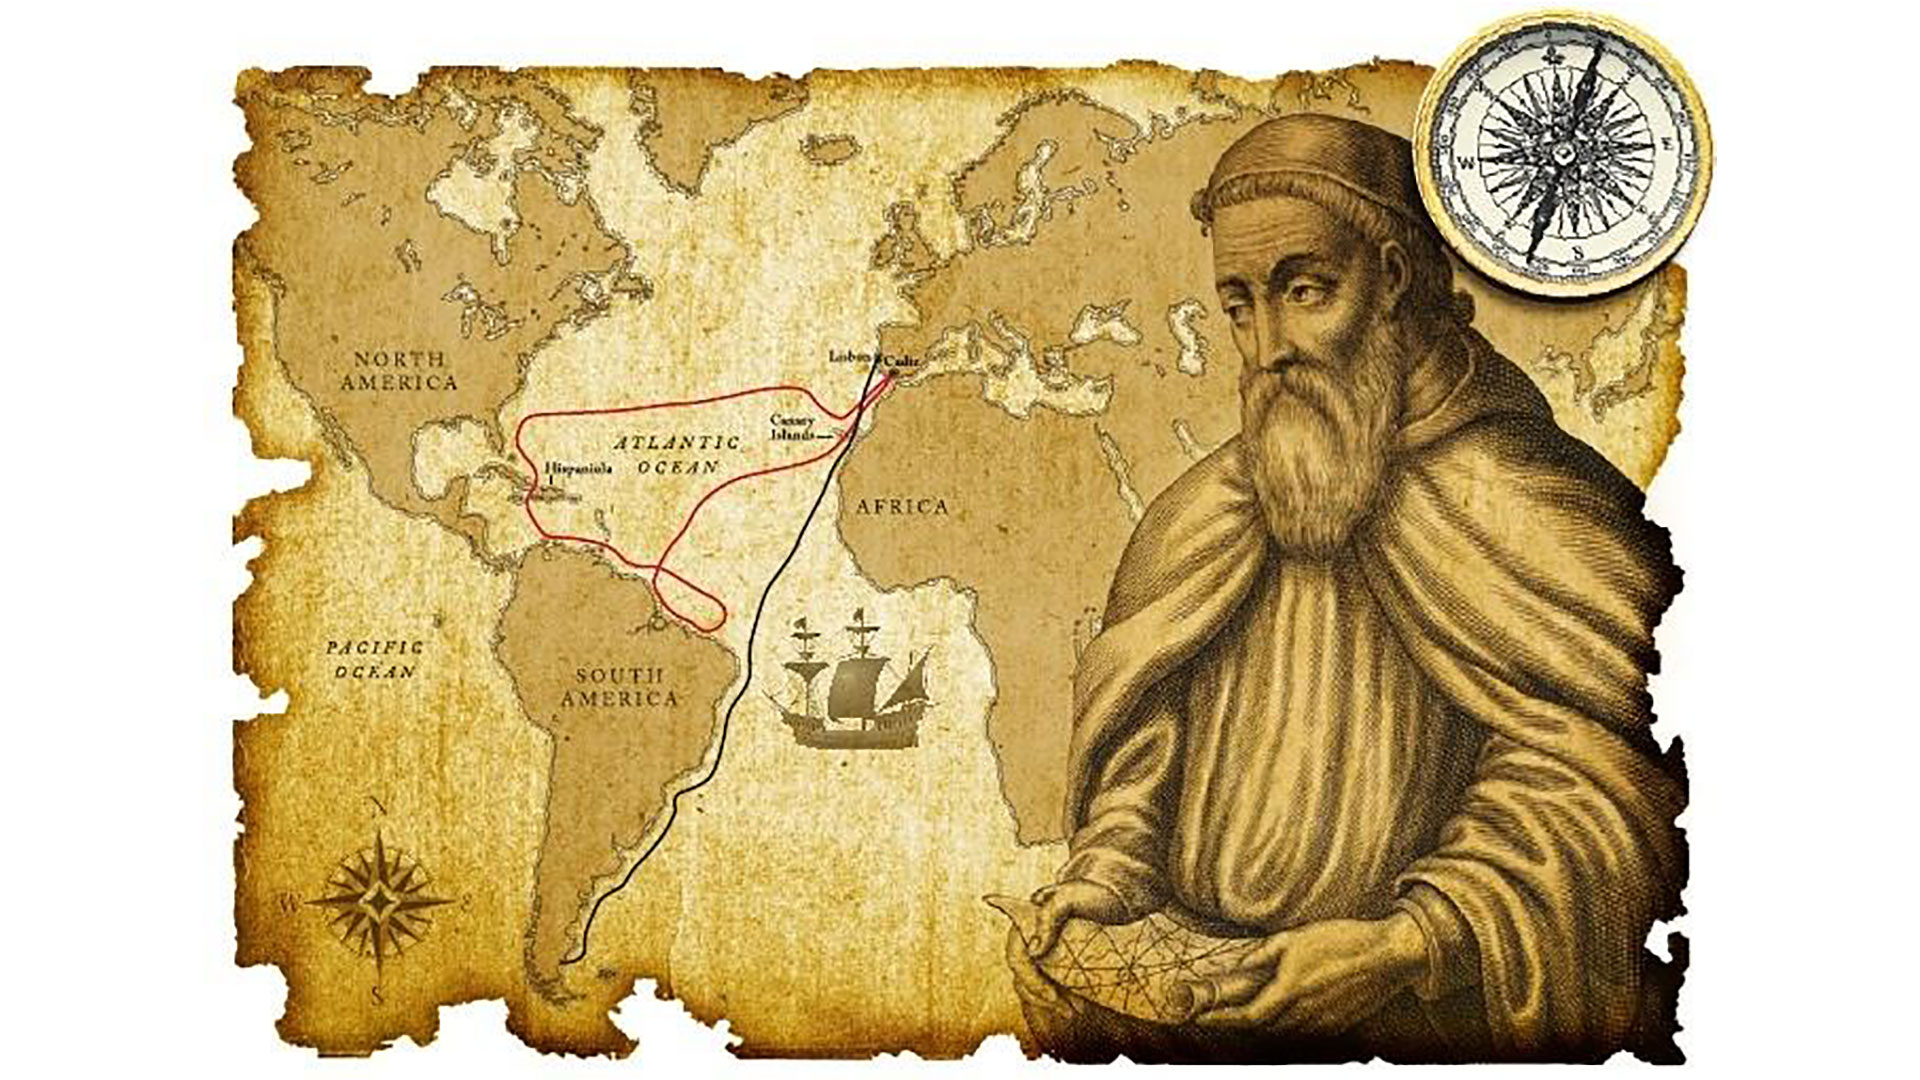 Vespucio creyó que había llegado a Asia mientras exploraba el continente americano 